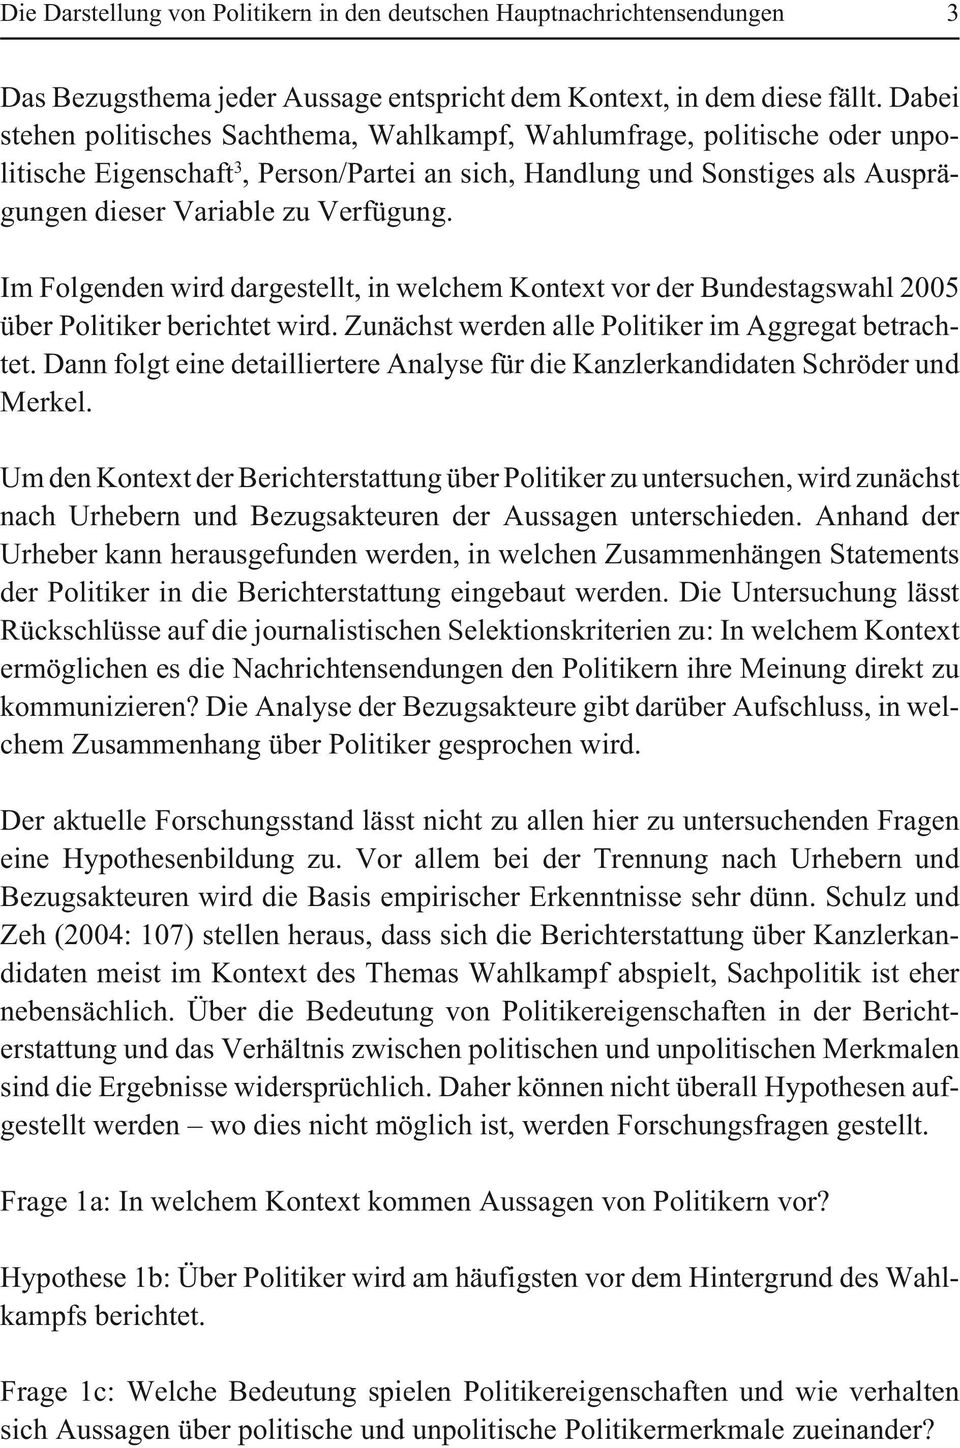 Im Folgenden wird dargestellt, in welchem Kontext vor der Bundestagswahl 2005 über Politiker berichtet wird. Zunächst werden alle Politiker im Aggregat betrachtet.